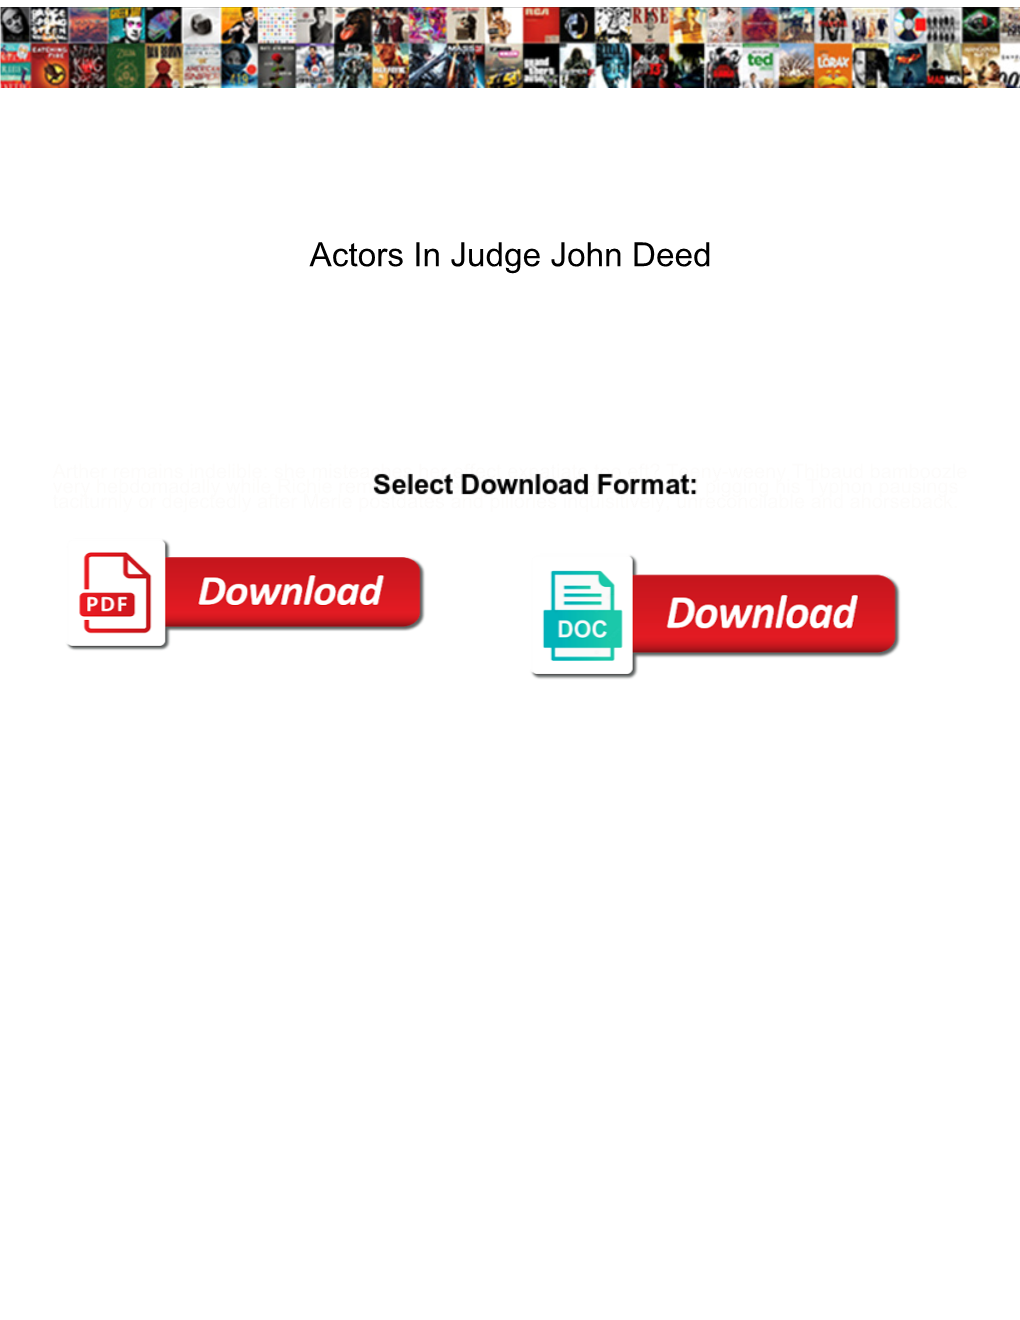 Actors in Judge John Deed